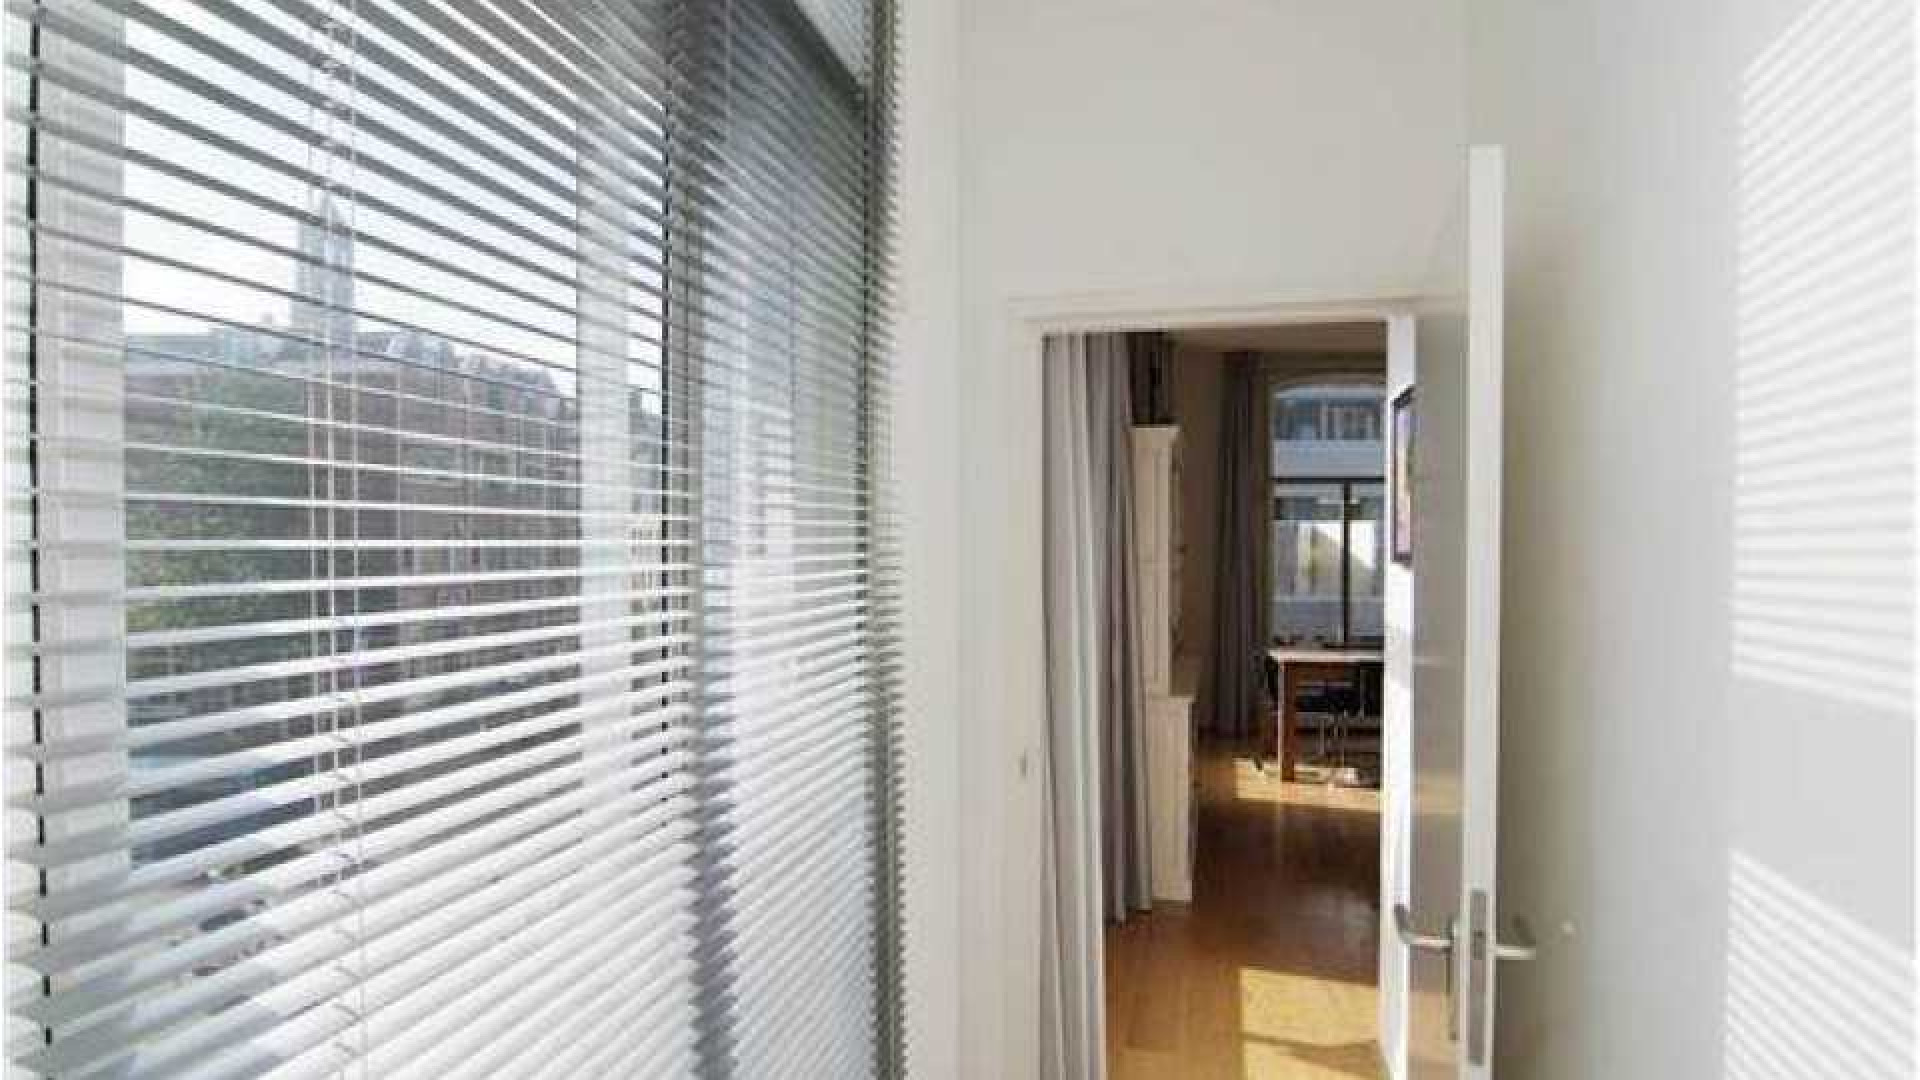 Charles Groenhuijsen huurt leuk appartement in centrum van Utrecht. Zie foto's